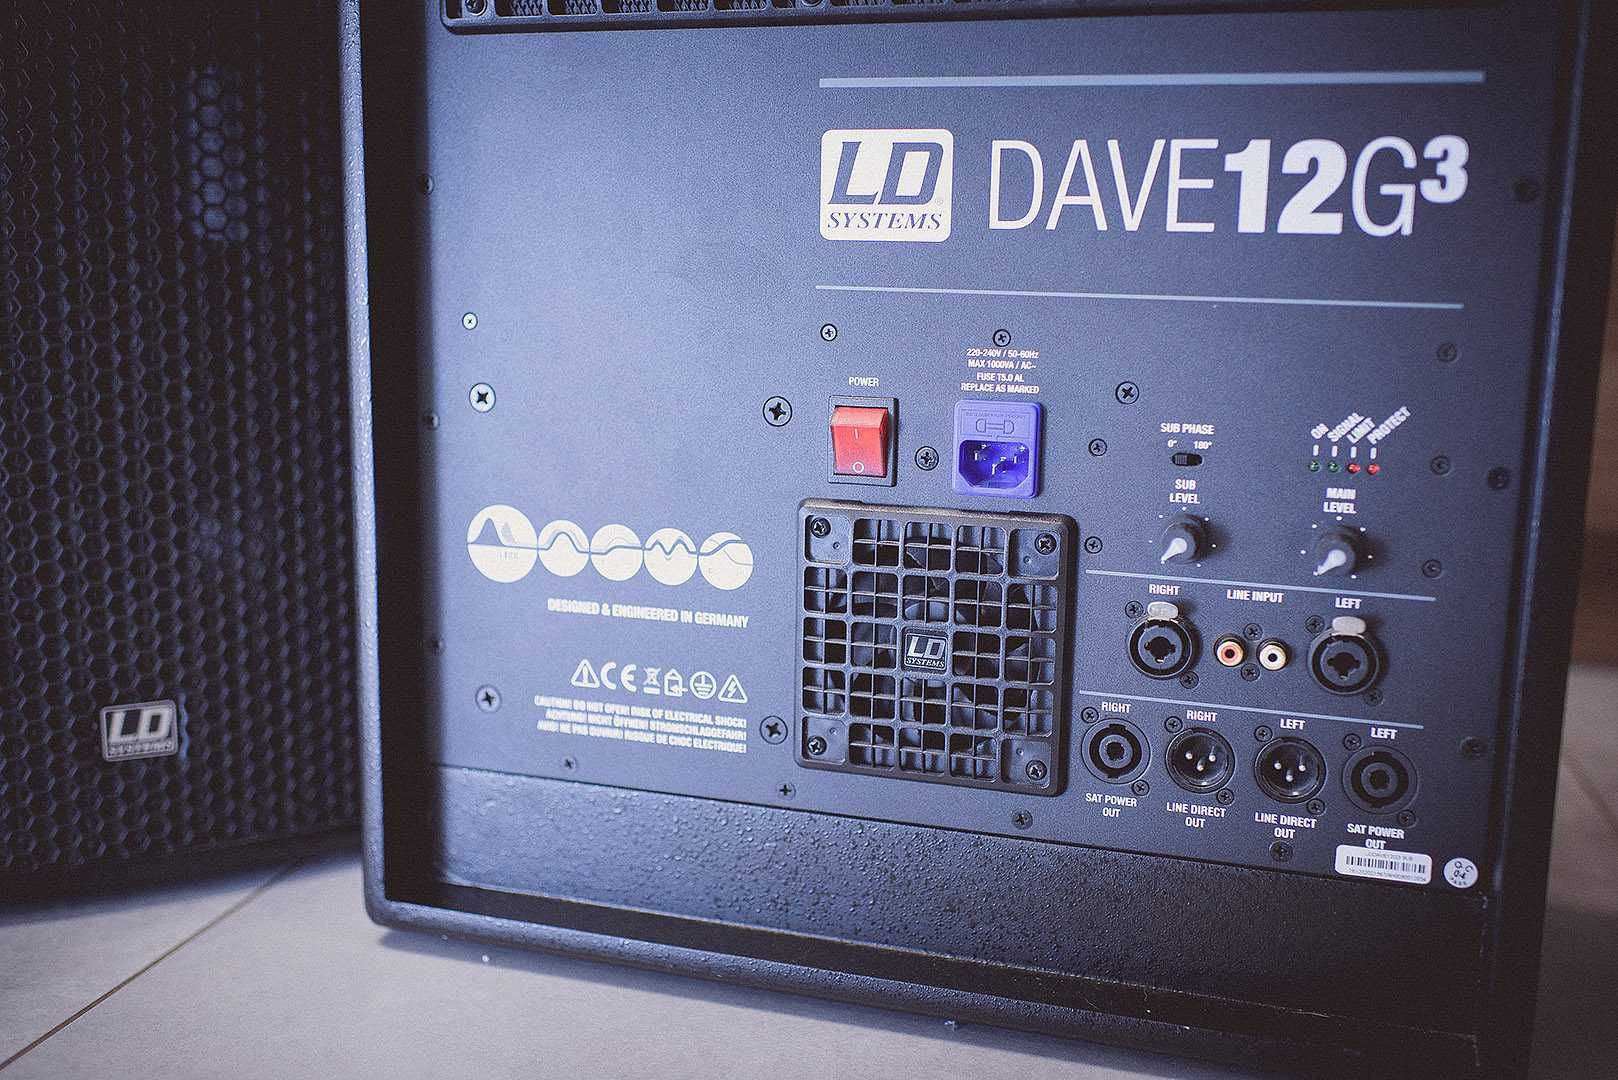 LD DAVE 12 G3 nagłośnienie aktywne - 2.1 głośniki subwoofer wzmacniacz